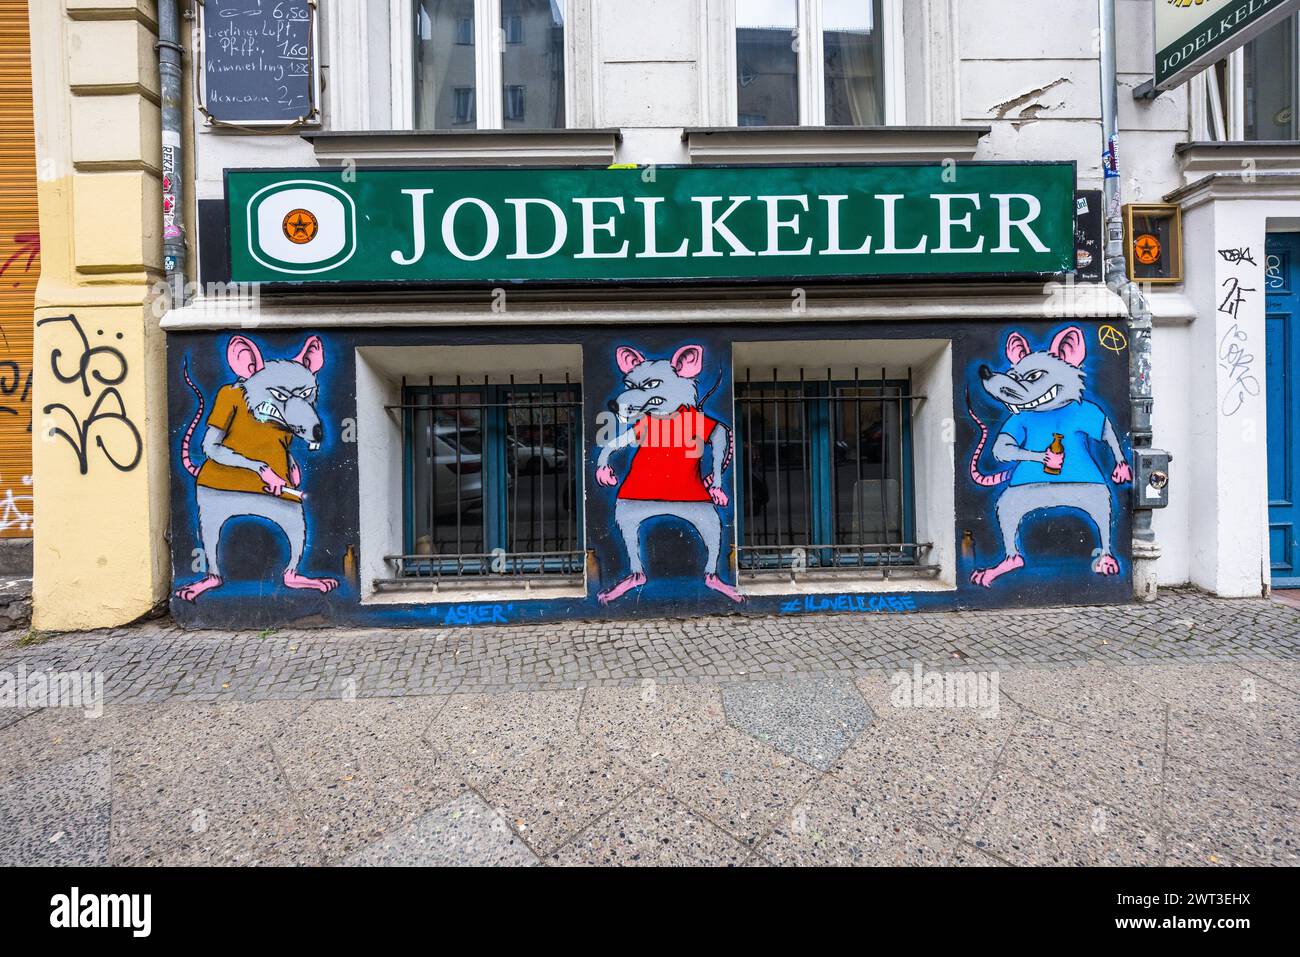 Basement Restaurant Jodelkeller, Berlin, Germany Stock Photo